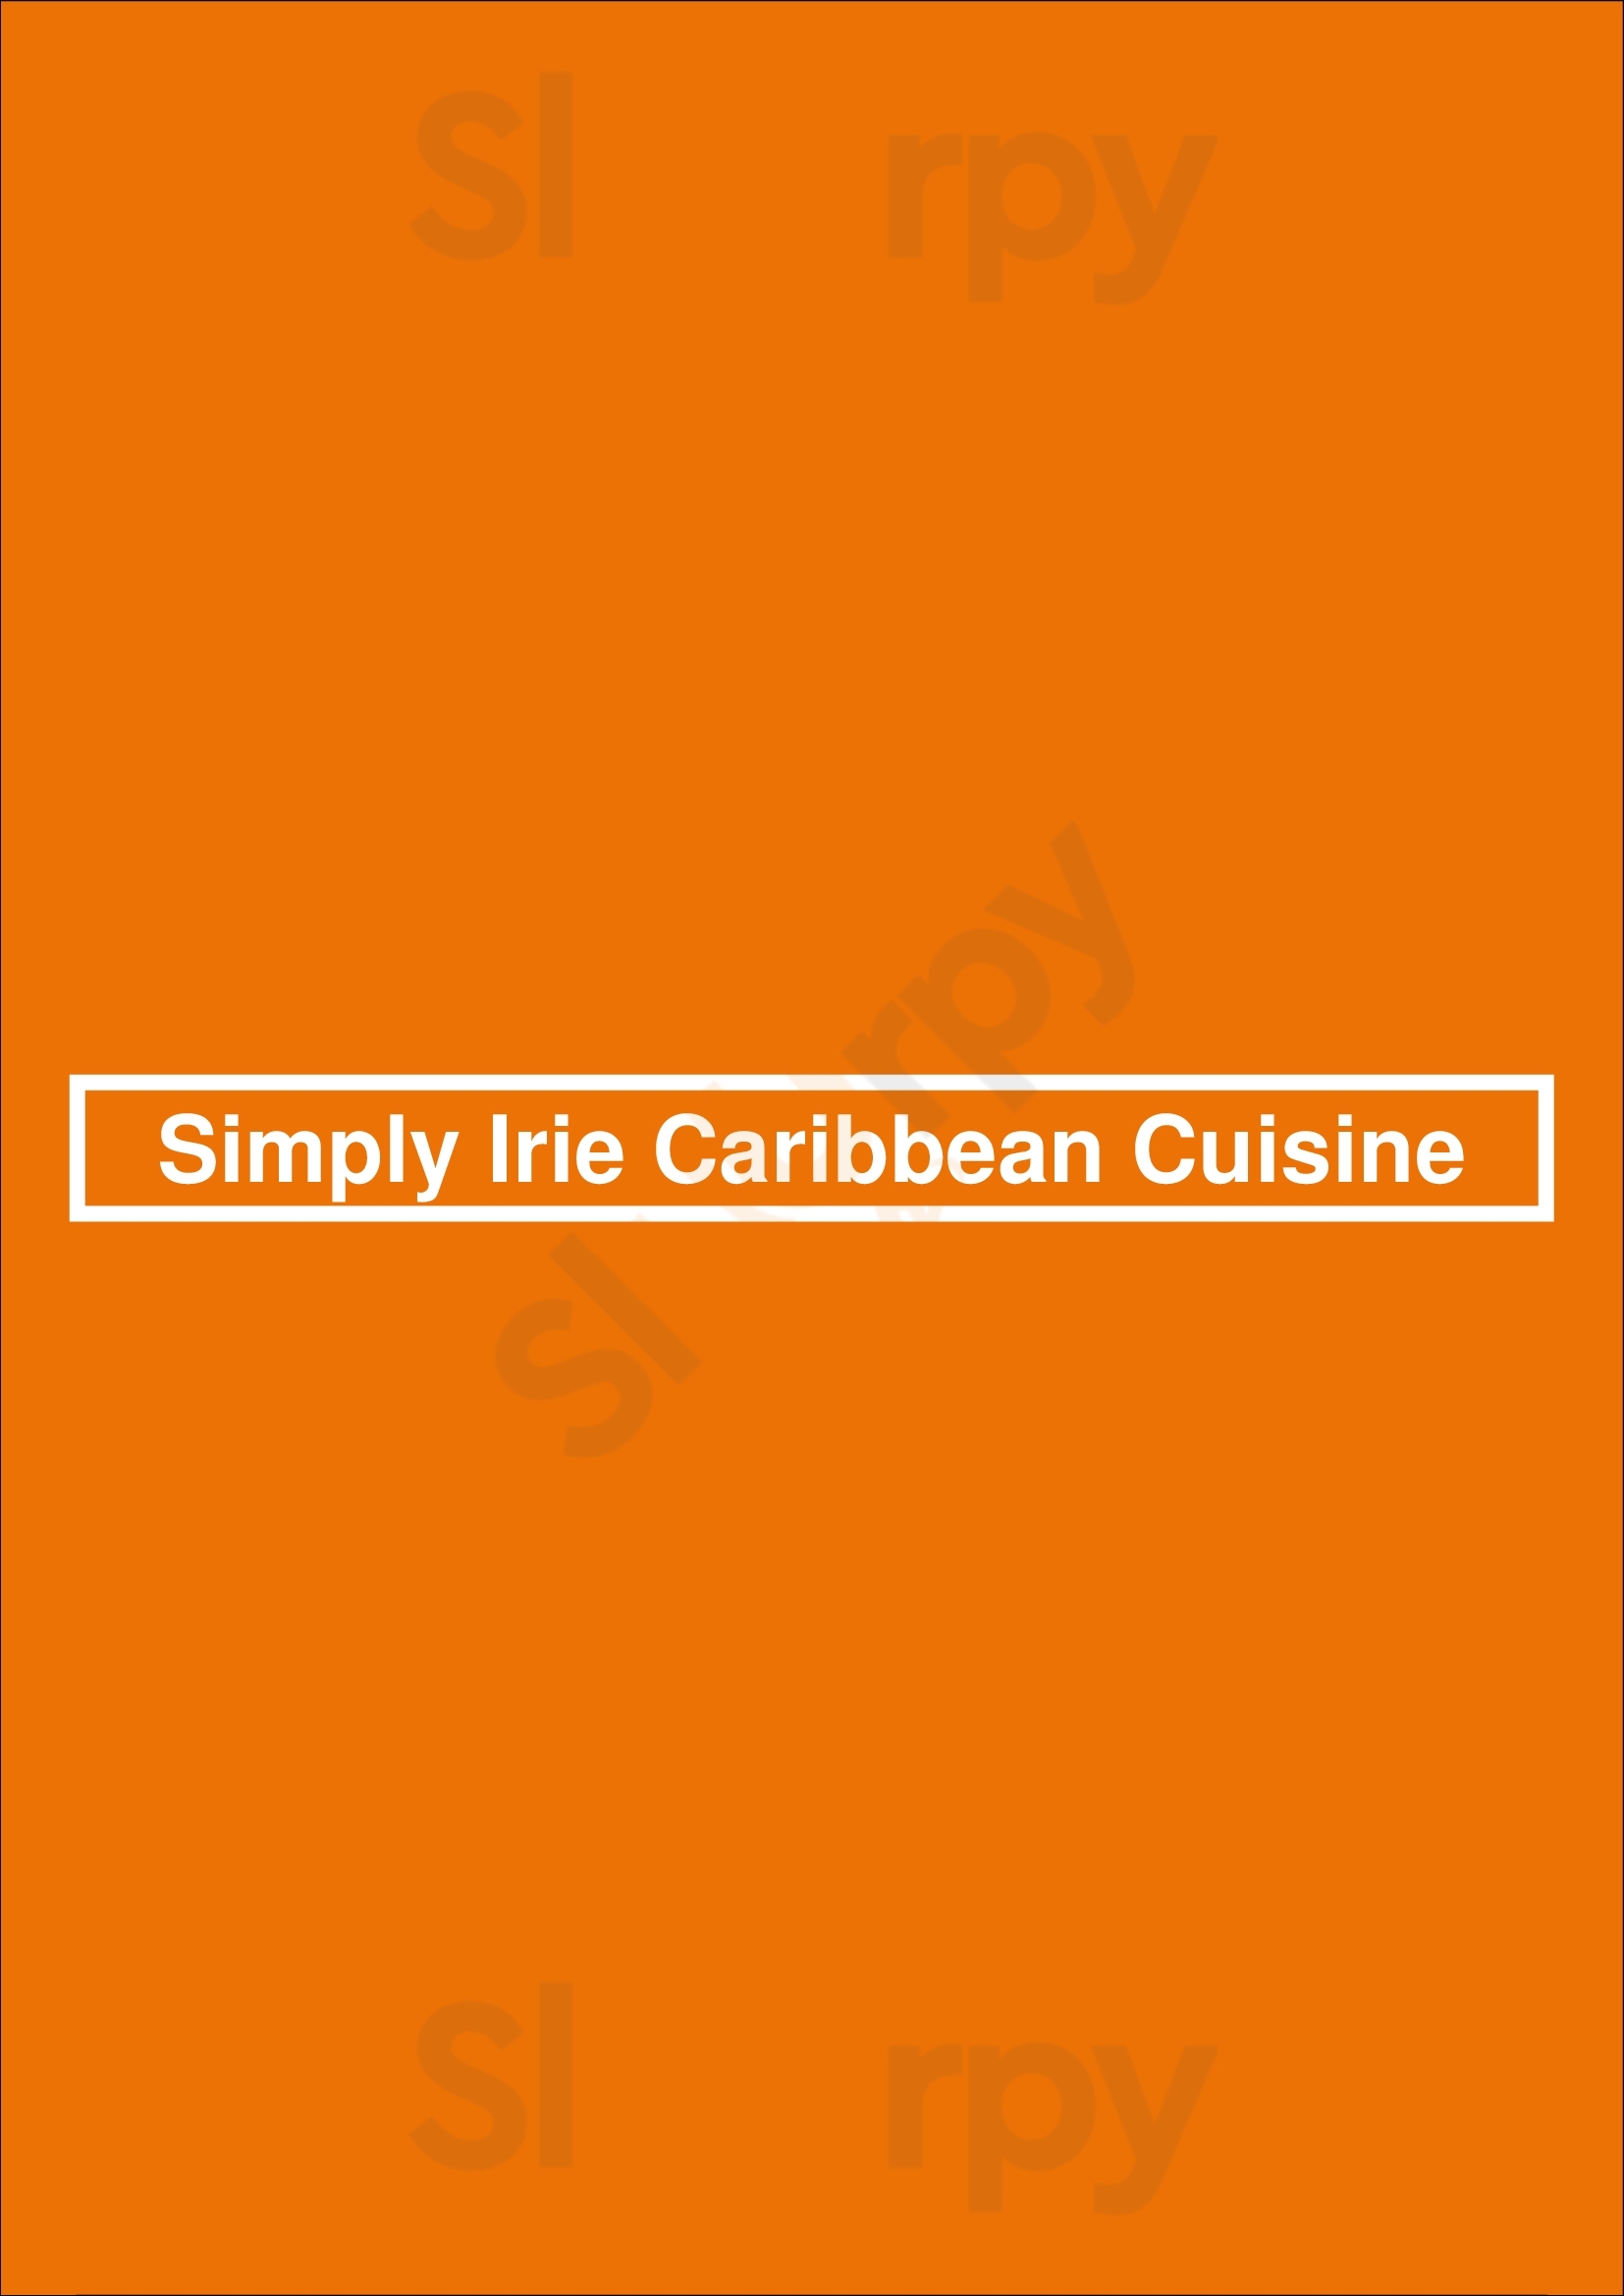 Simply Irie Caribbean Cuisine Calgary Menu - 1